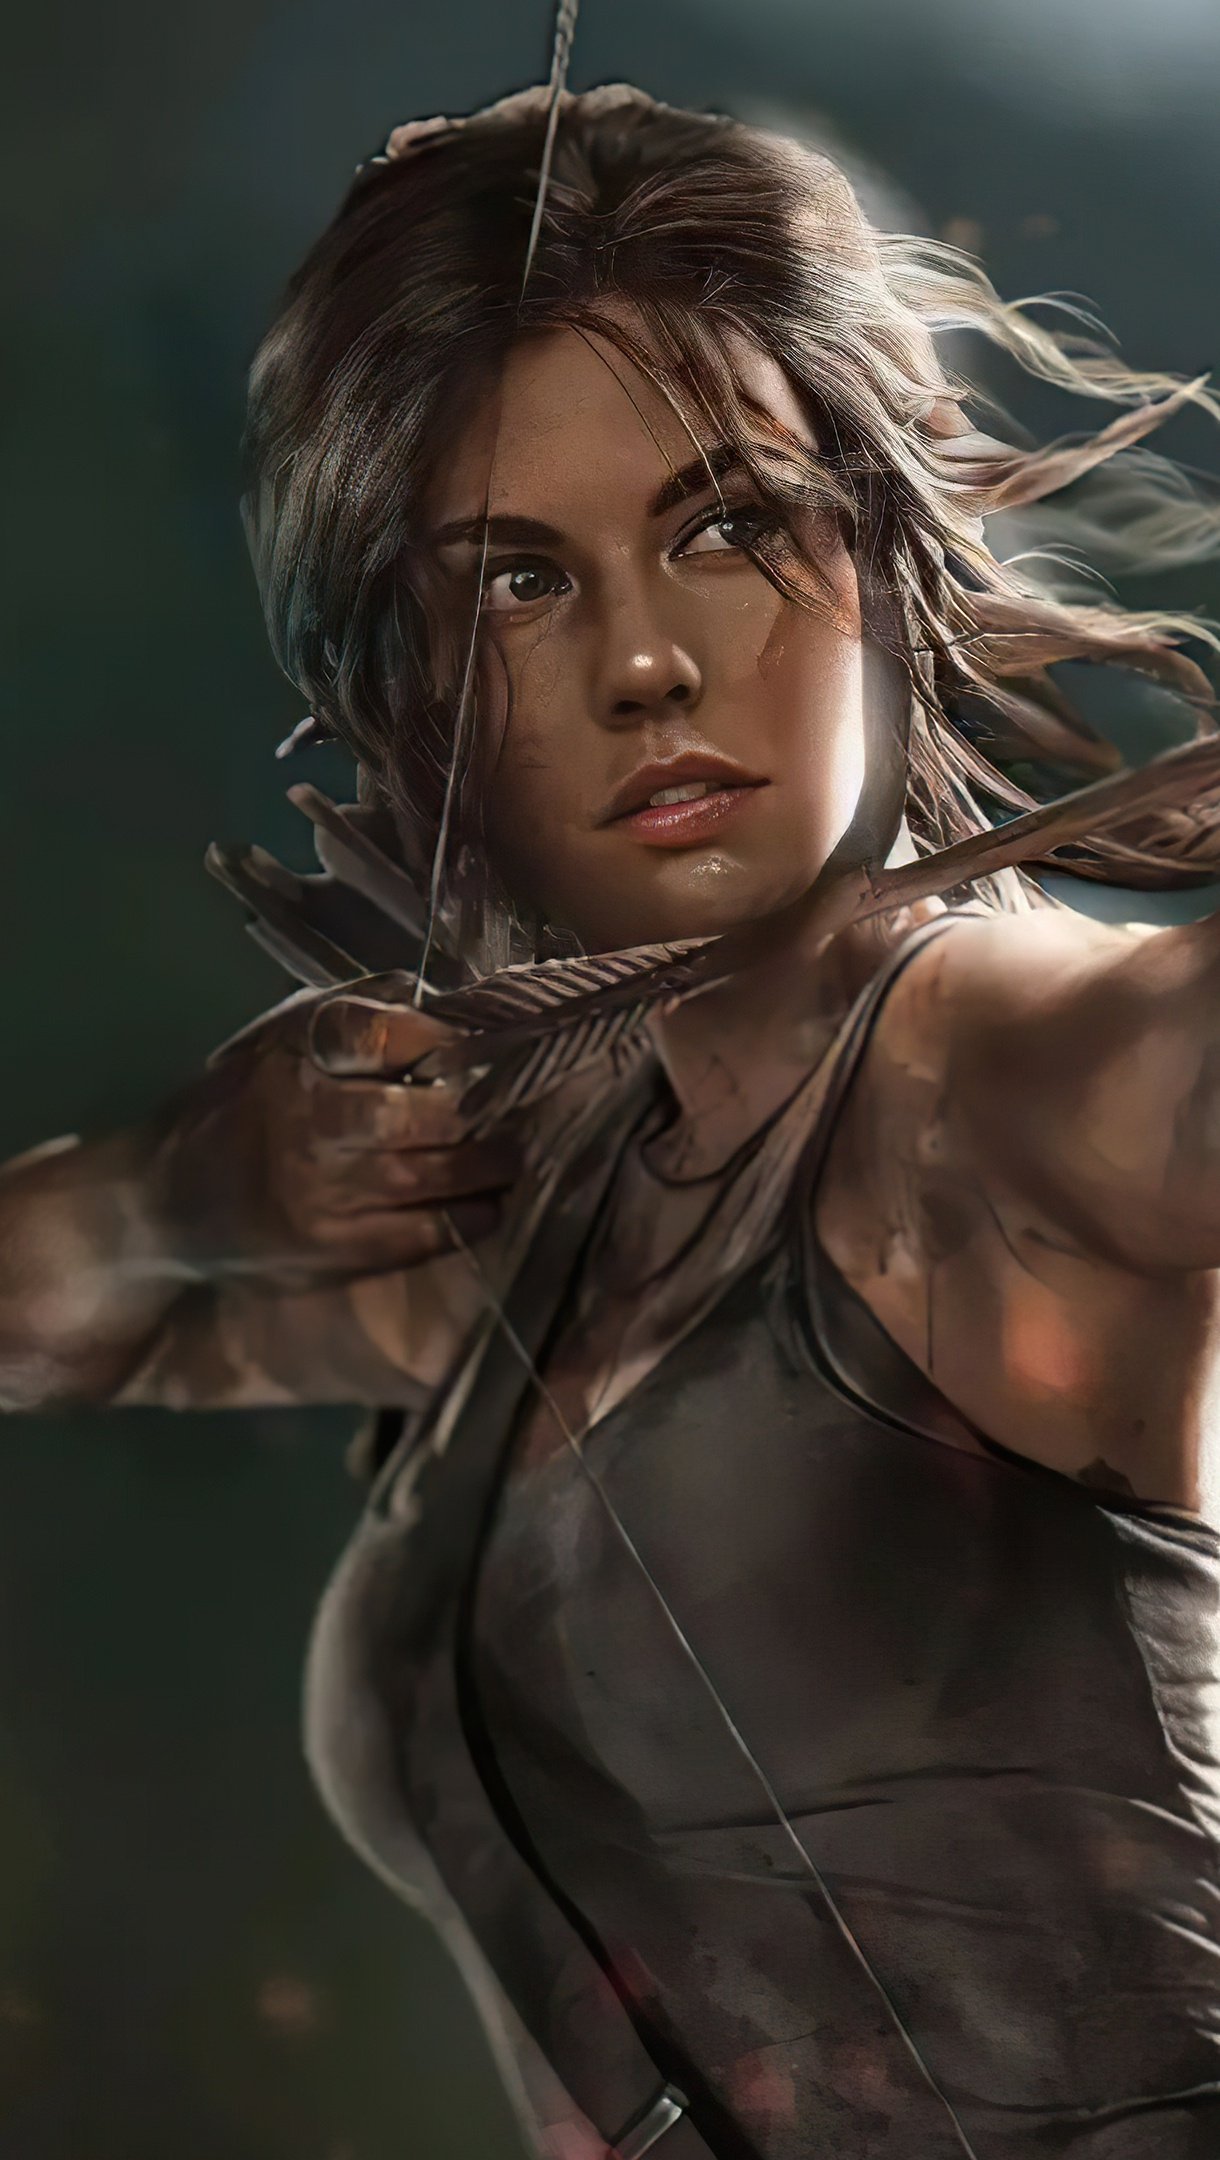 Fondos de pantalla Lauren Cohan como Lara Croft The Tomb Raider Vertical